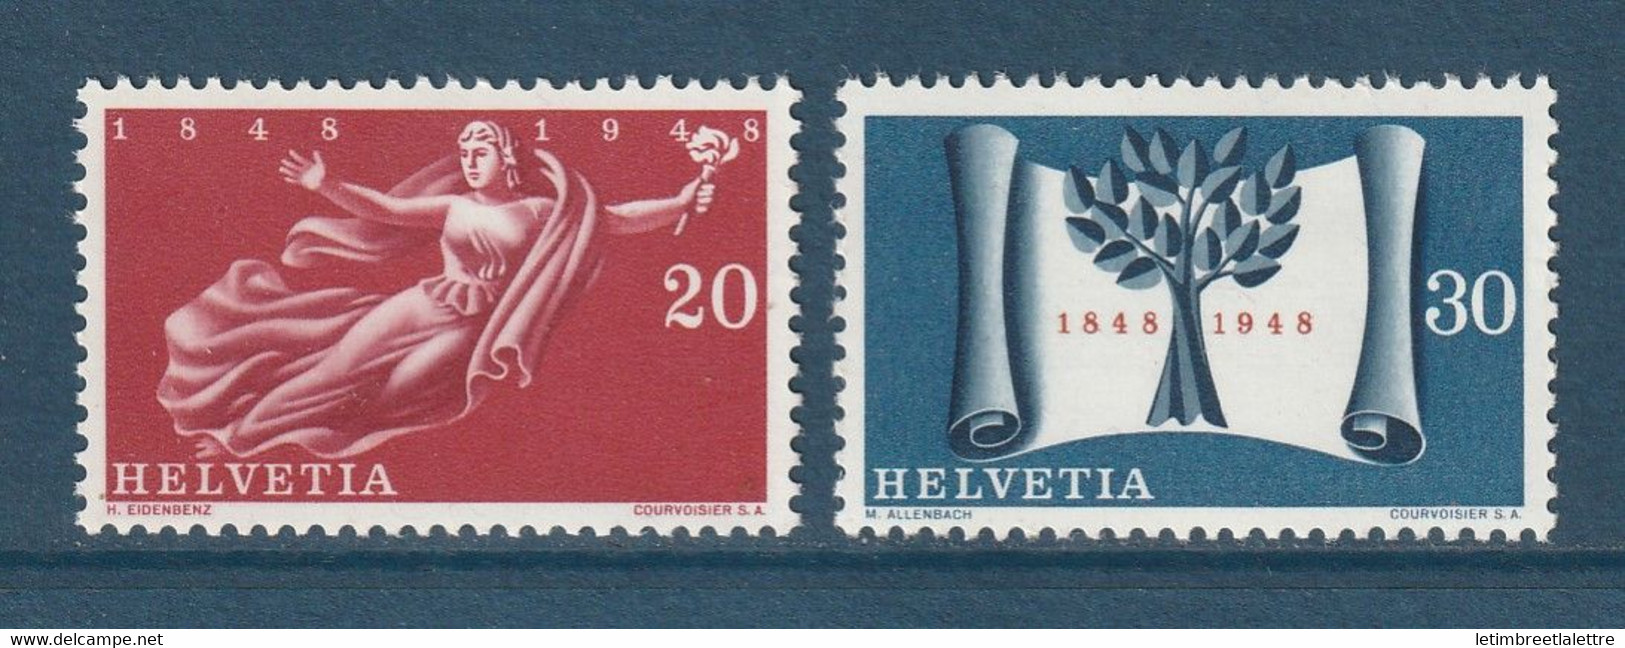 ⭐ Suisse - YT N° 455 Et 456 ** - Neuf Sans Charnière - 1948 ⭐ - Nuovi